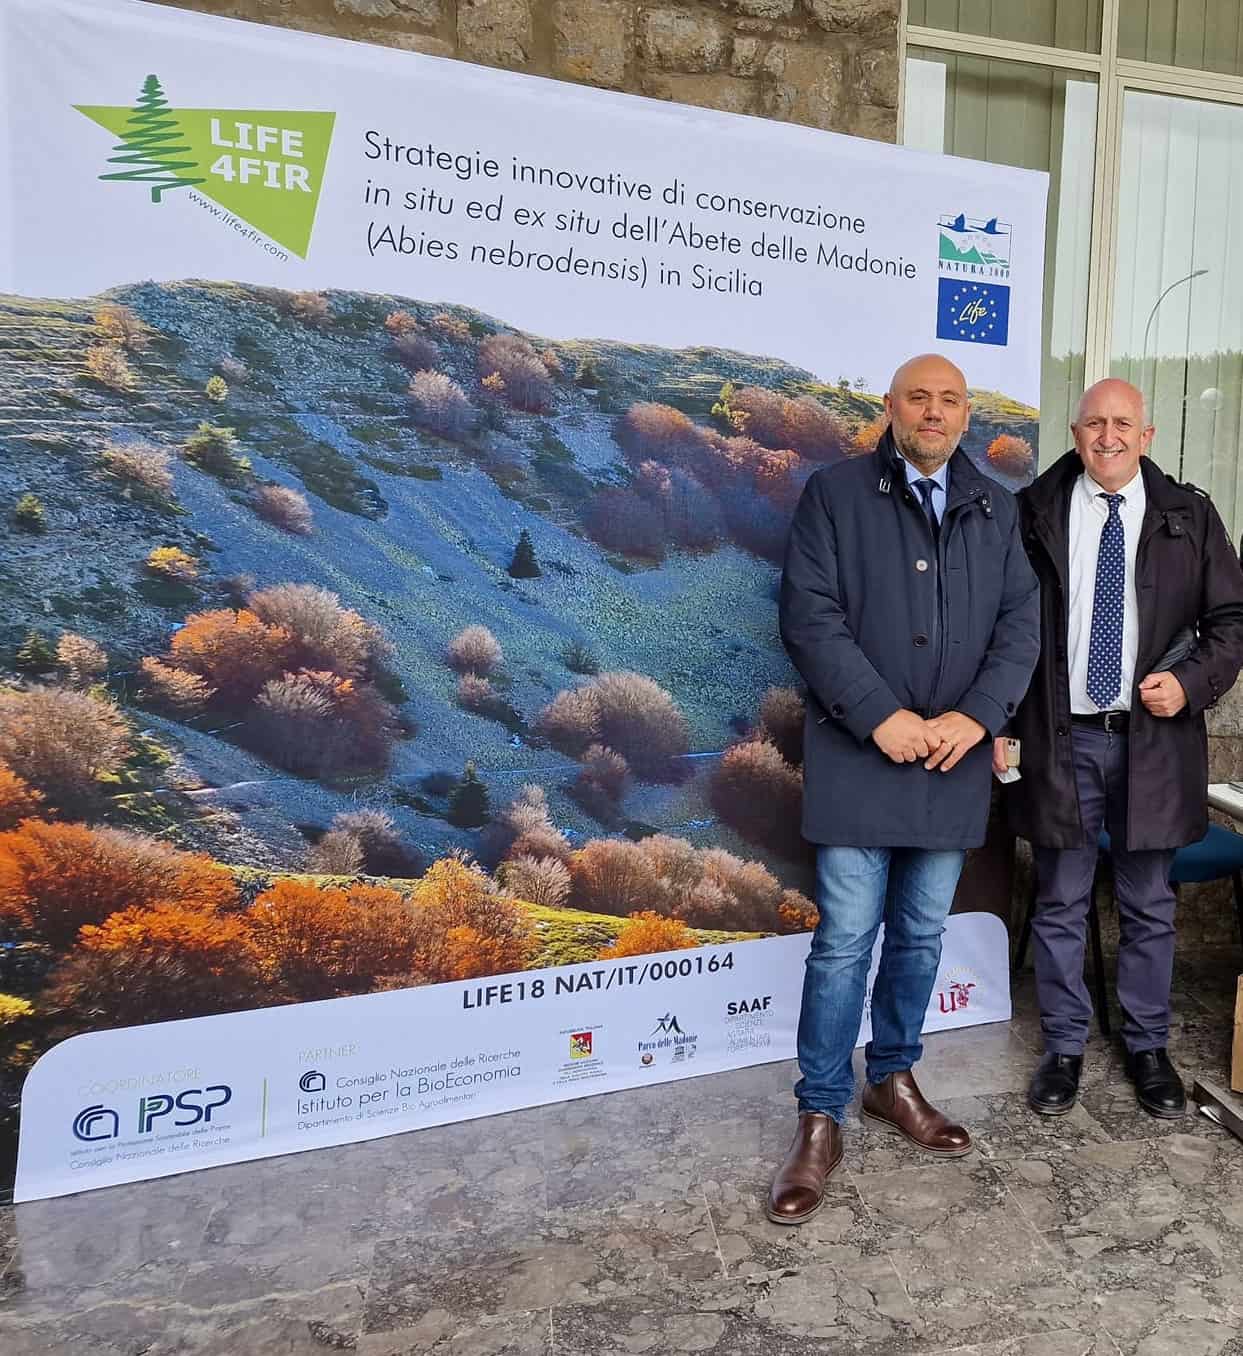 Progetto LIFE4FIR - Il Parco delle Madonie Geoparco Unesco all'Open Day del Dipartimento di Scienze Agrarie Alimentari e Forestali dell'Università di Palermo